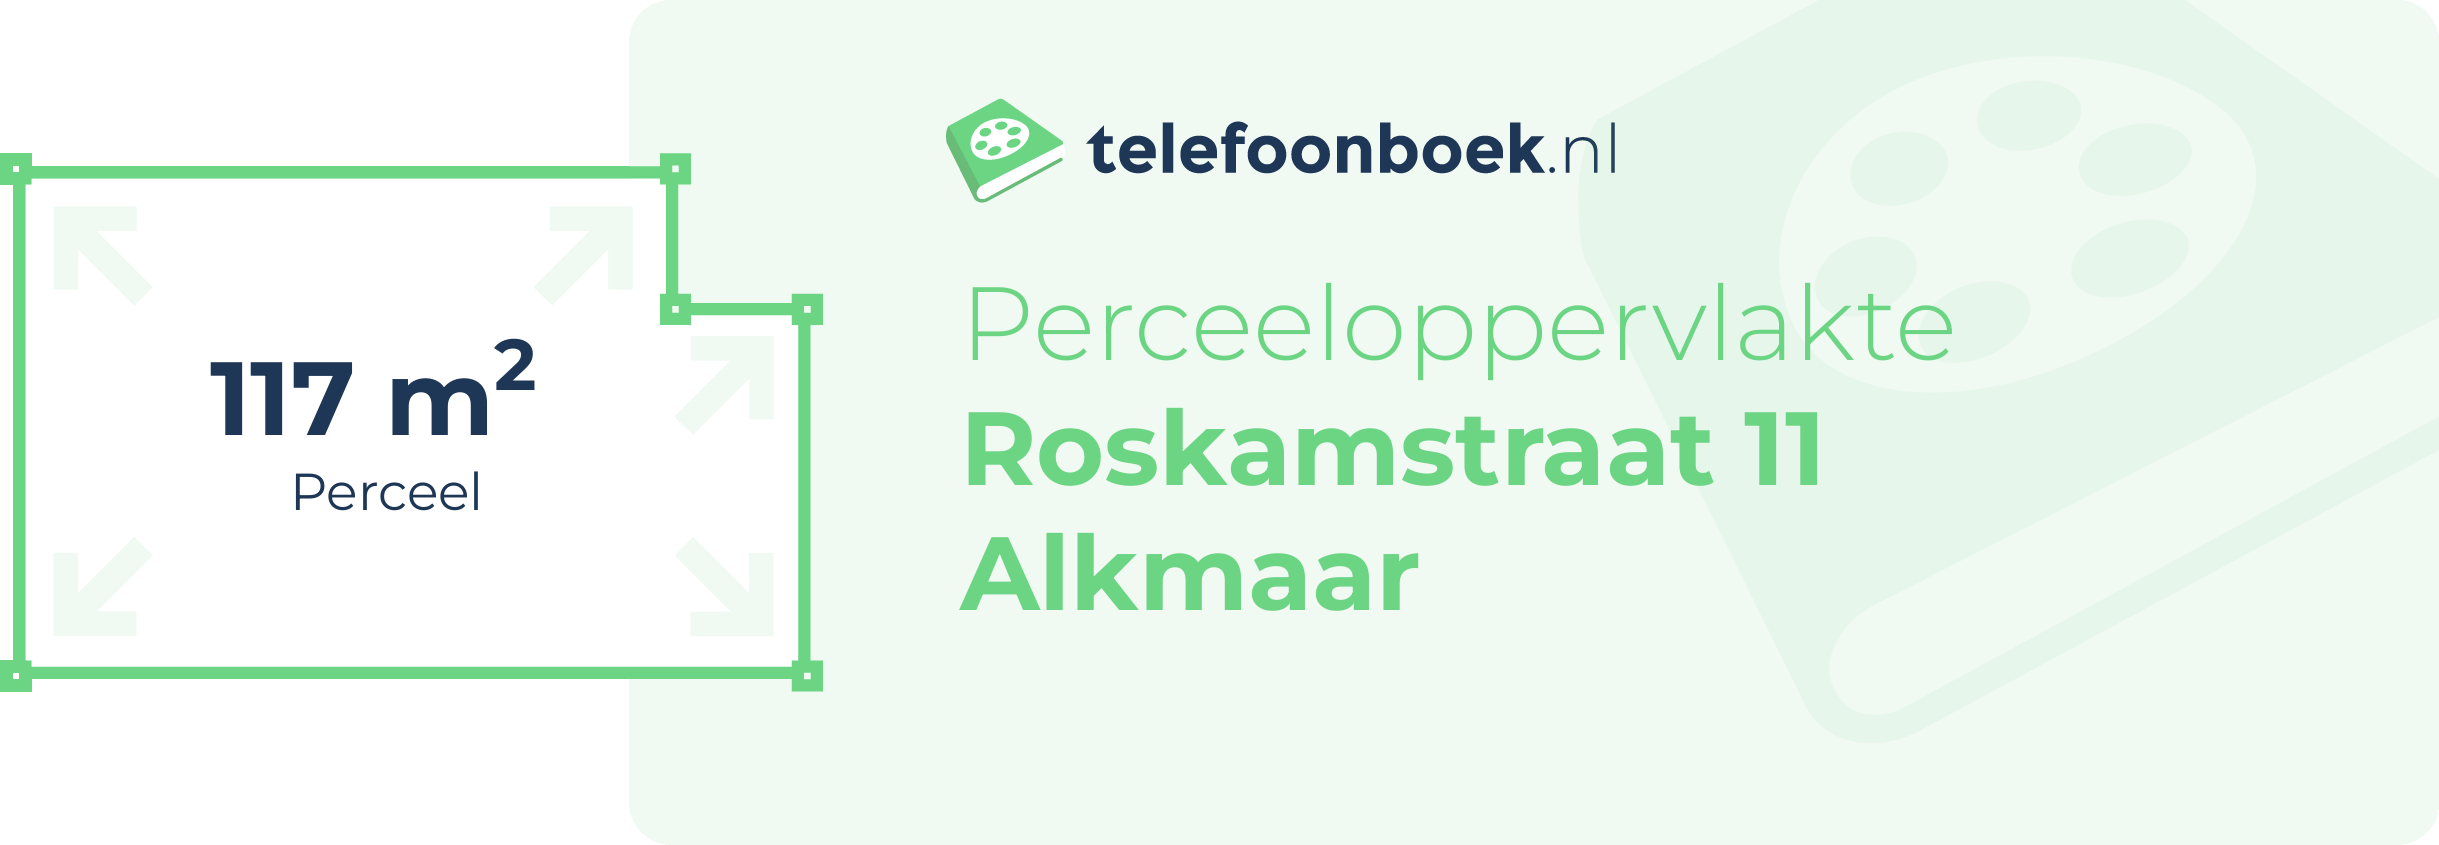 Perceeloppervlakte Roskamstraat 11 Alkmaar